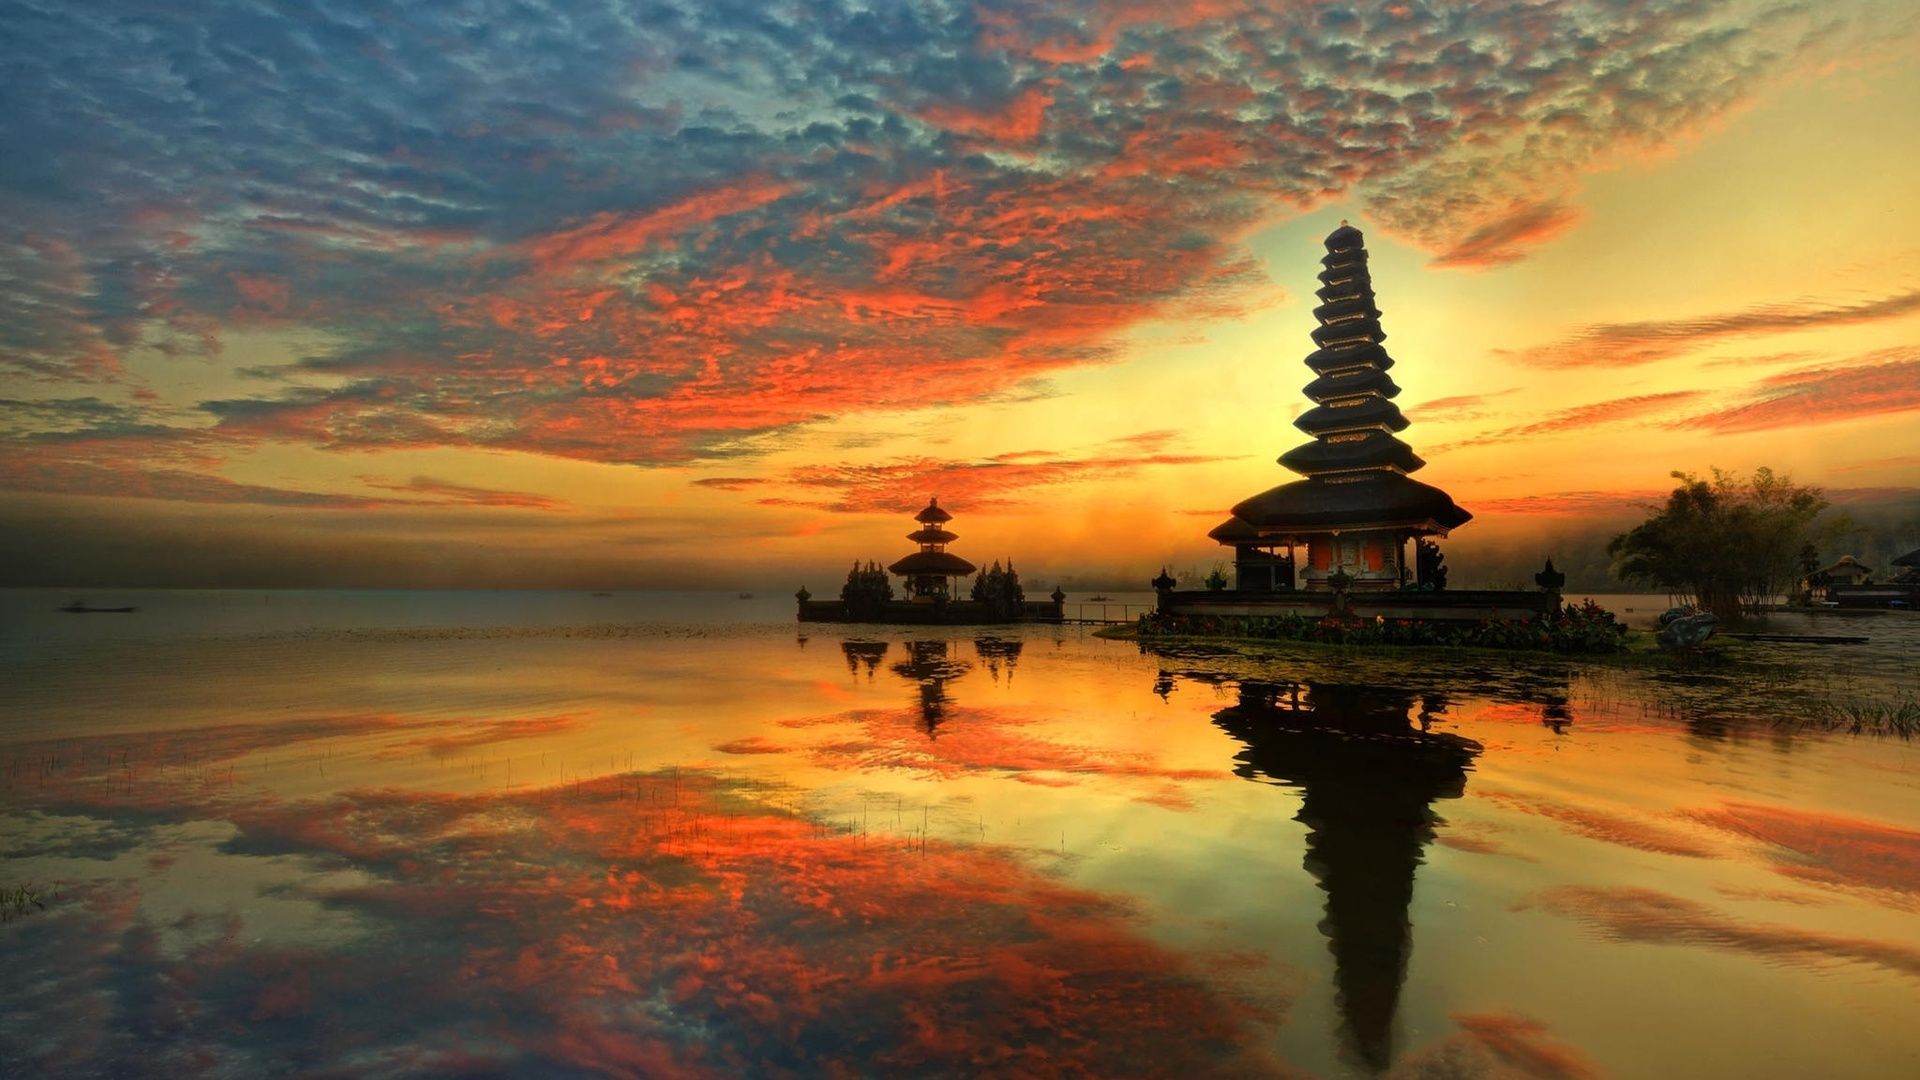 عکس زیبایی بیکران آسمان در جزیره بالی با کیفیت عالی